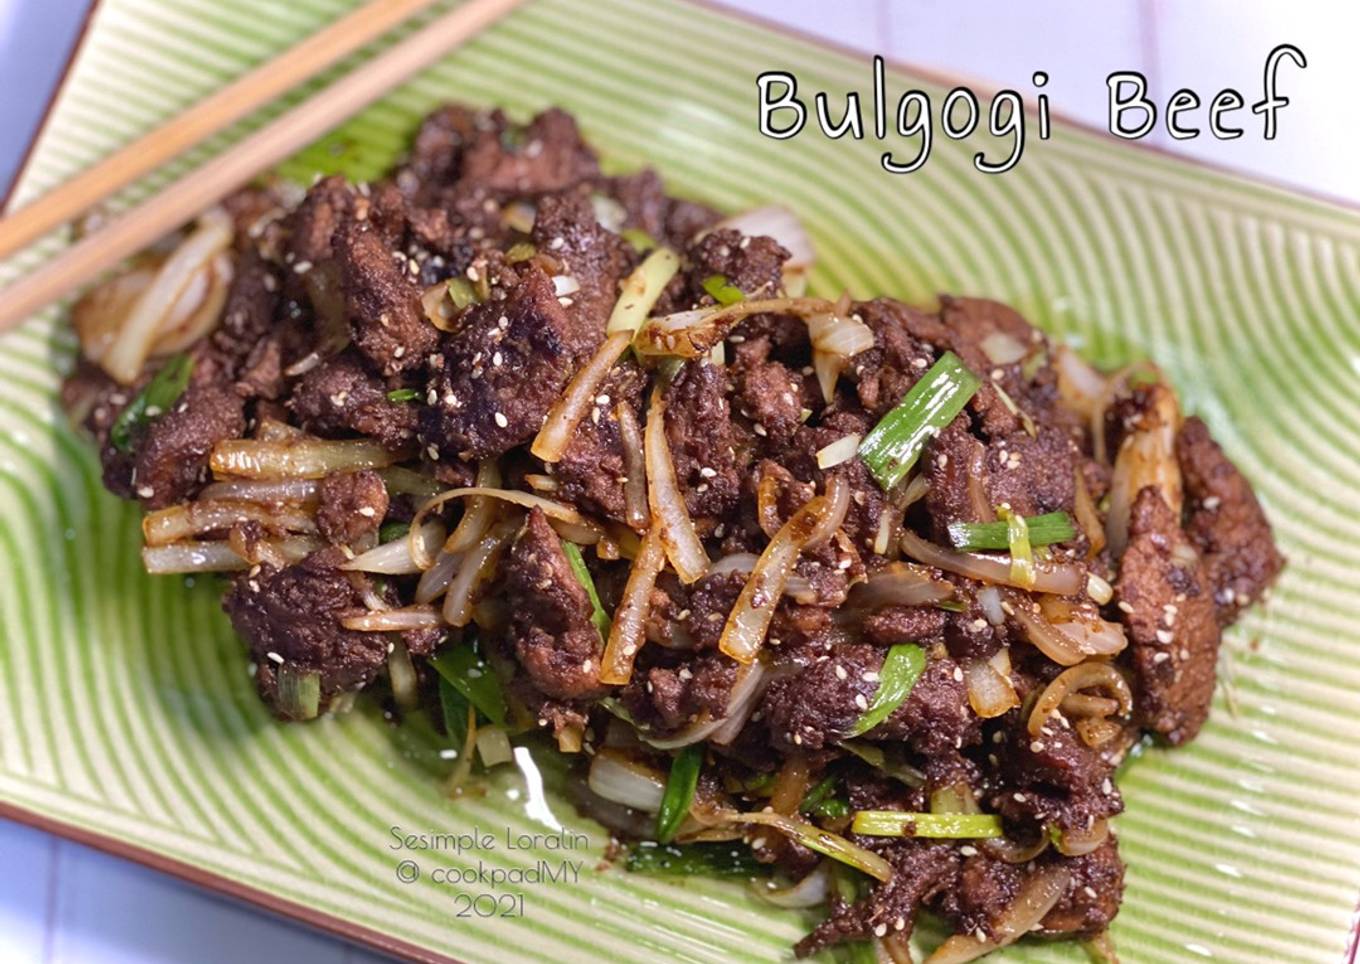 Resepi Bulgogi Beef (South Korea) 🇰🇷 yang Sempurna dan Mudah